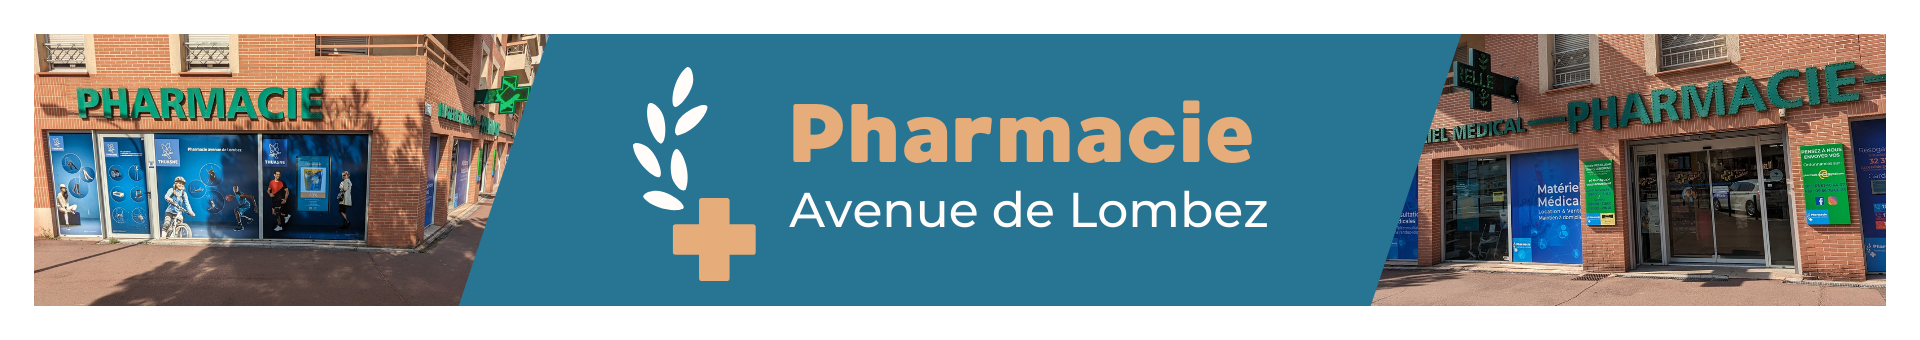 Pharmacie Avenue de Lombez,Toulouse